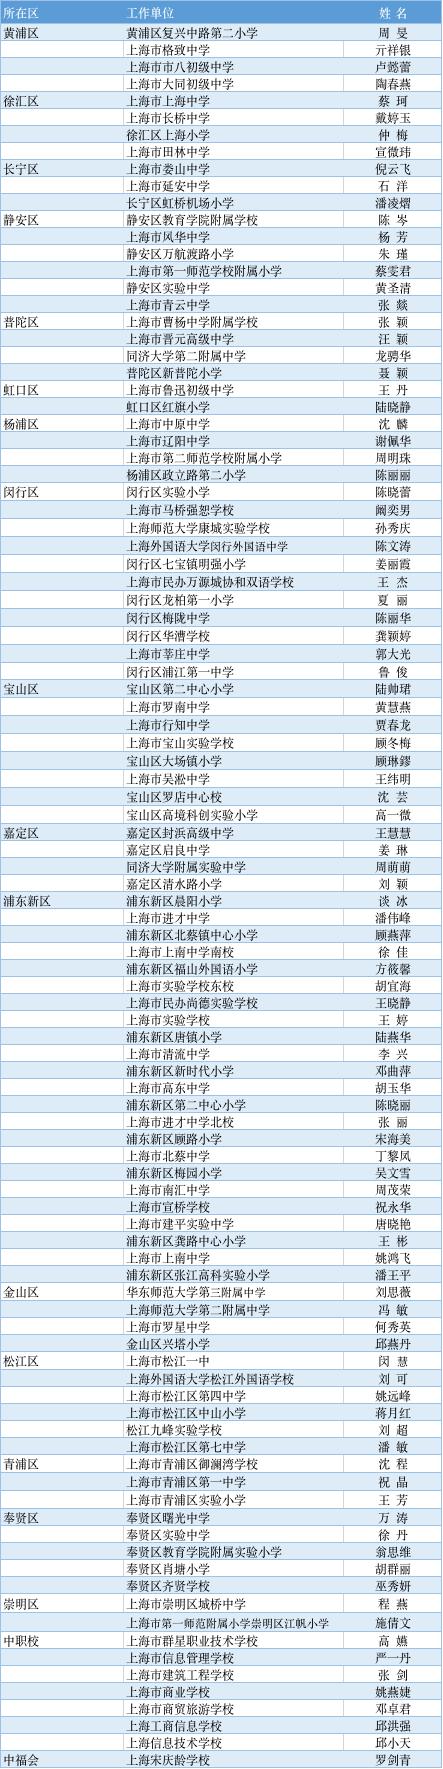 权威发布!2020年上海市特级教师建议人选(含备选)公示 上海市优秀教师名单